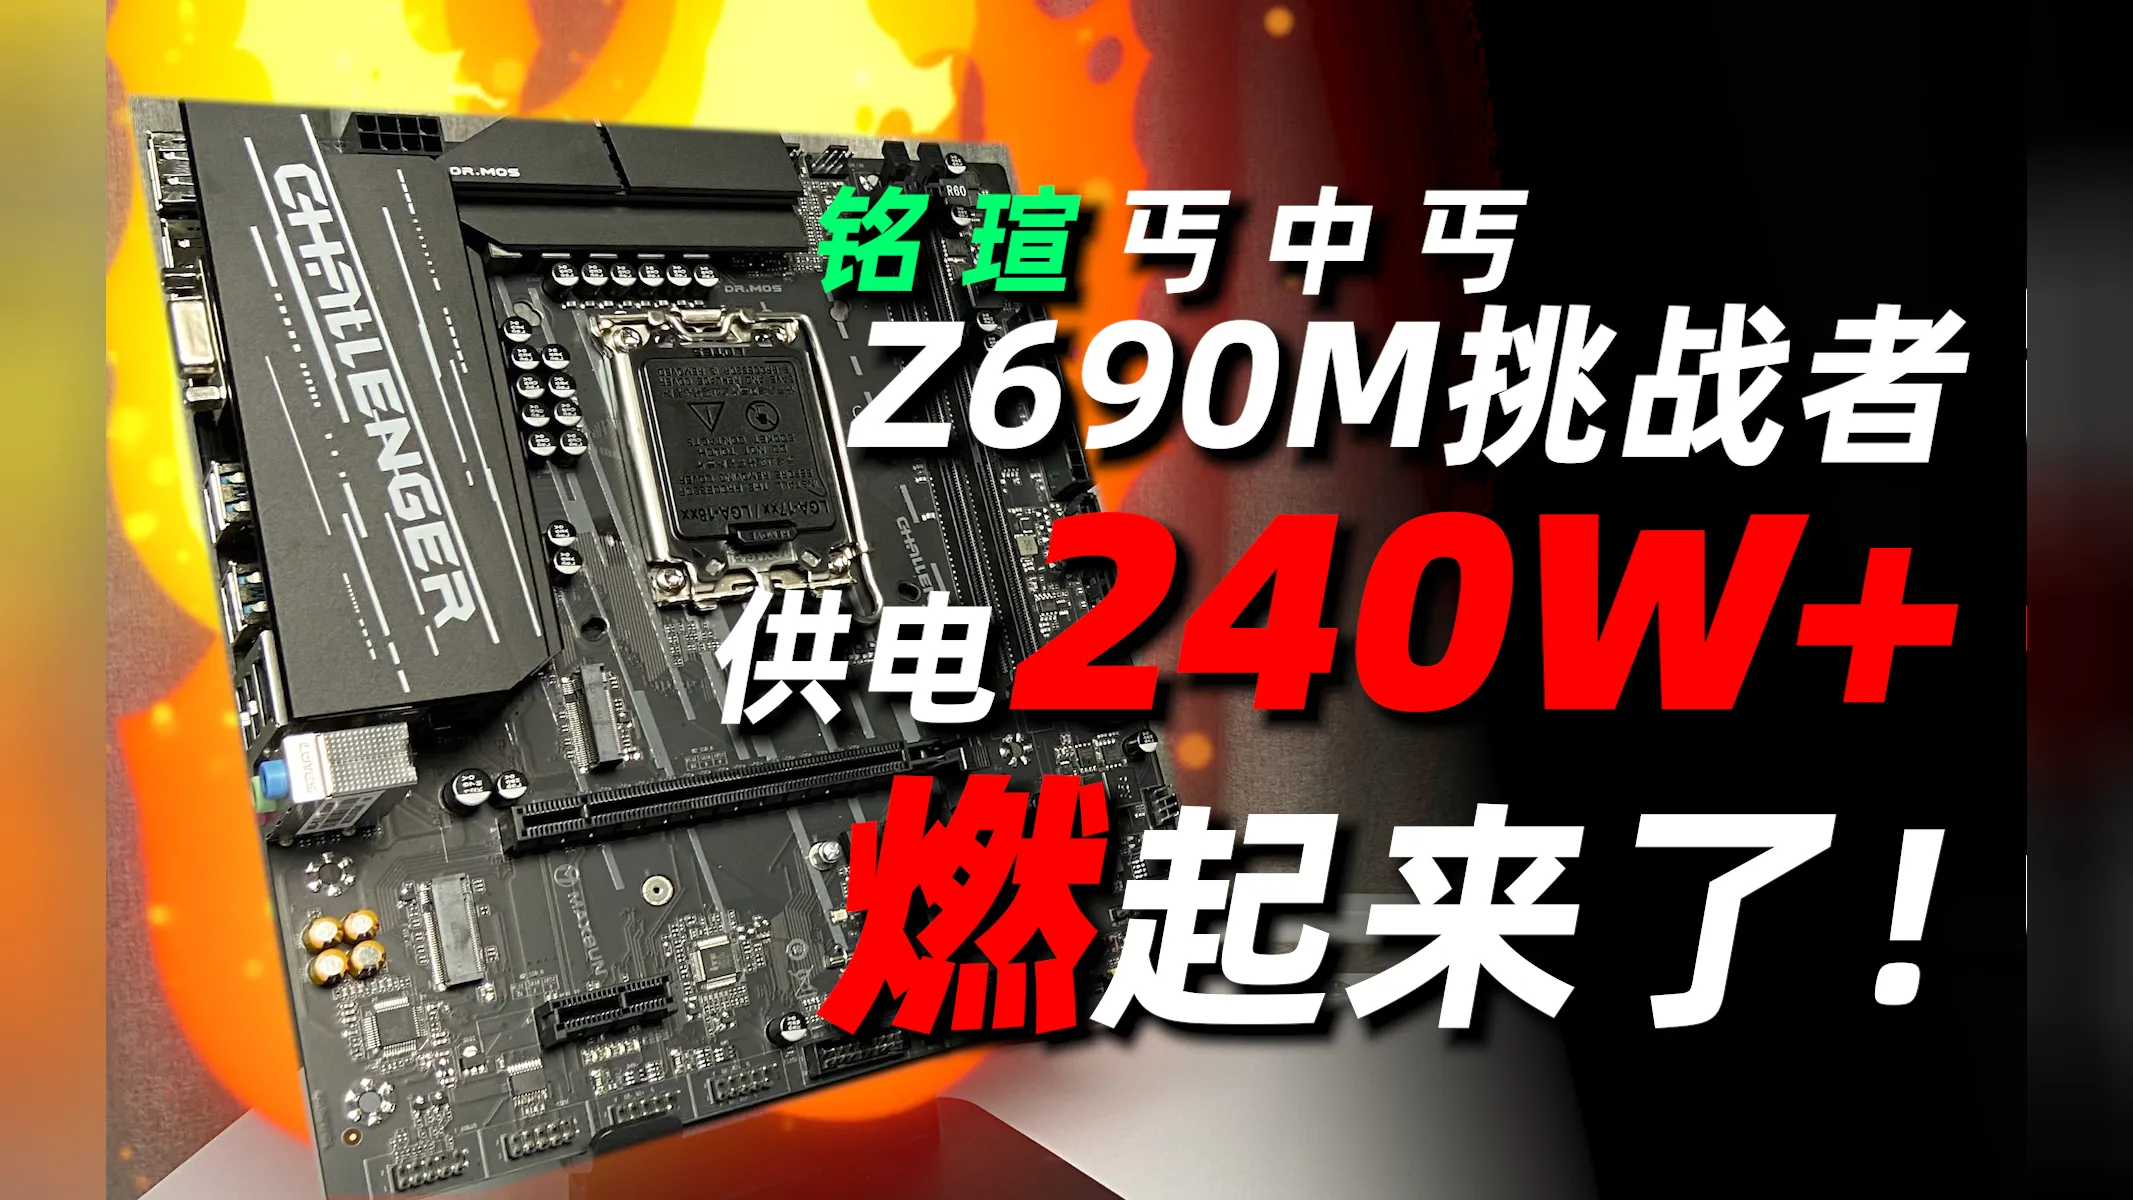 铭瑄 Z690M DDR4 主板：电竞梦想的重要阶梯，外观炫酷性能强大